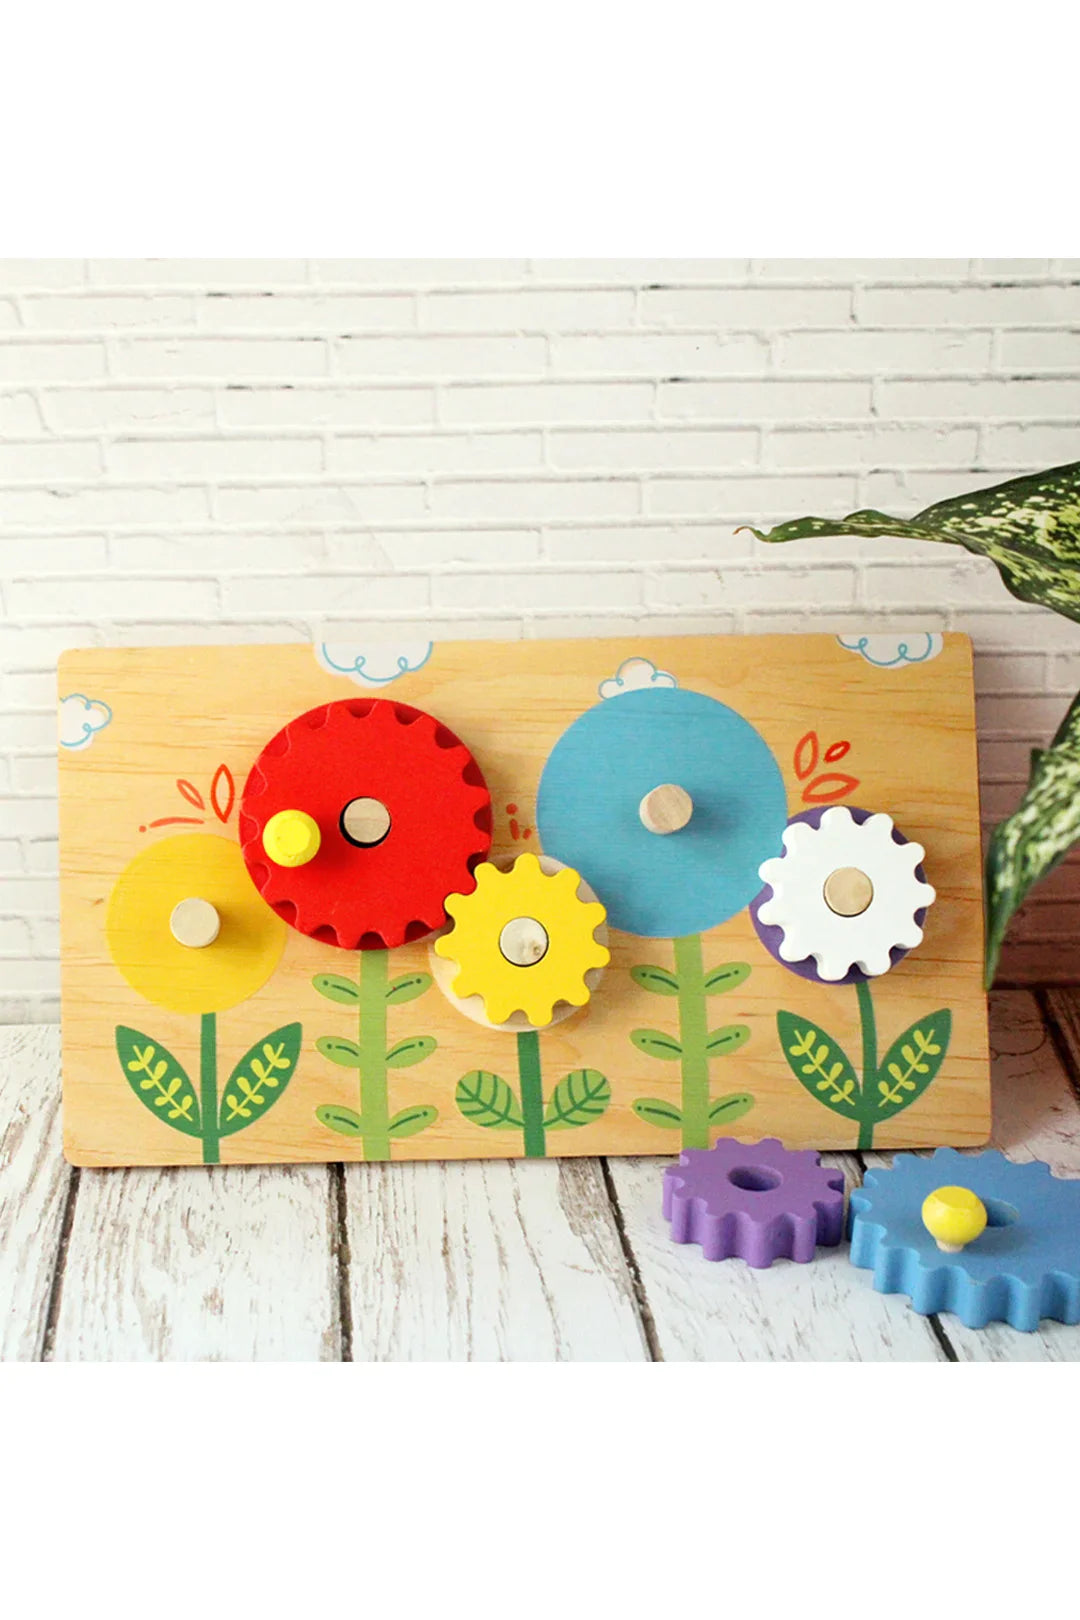 Flower Garden Wooden Gear Toy